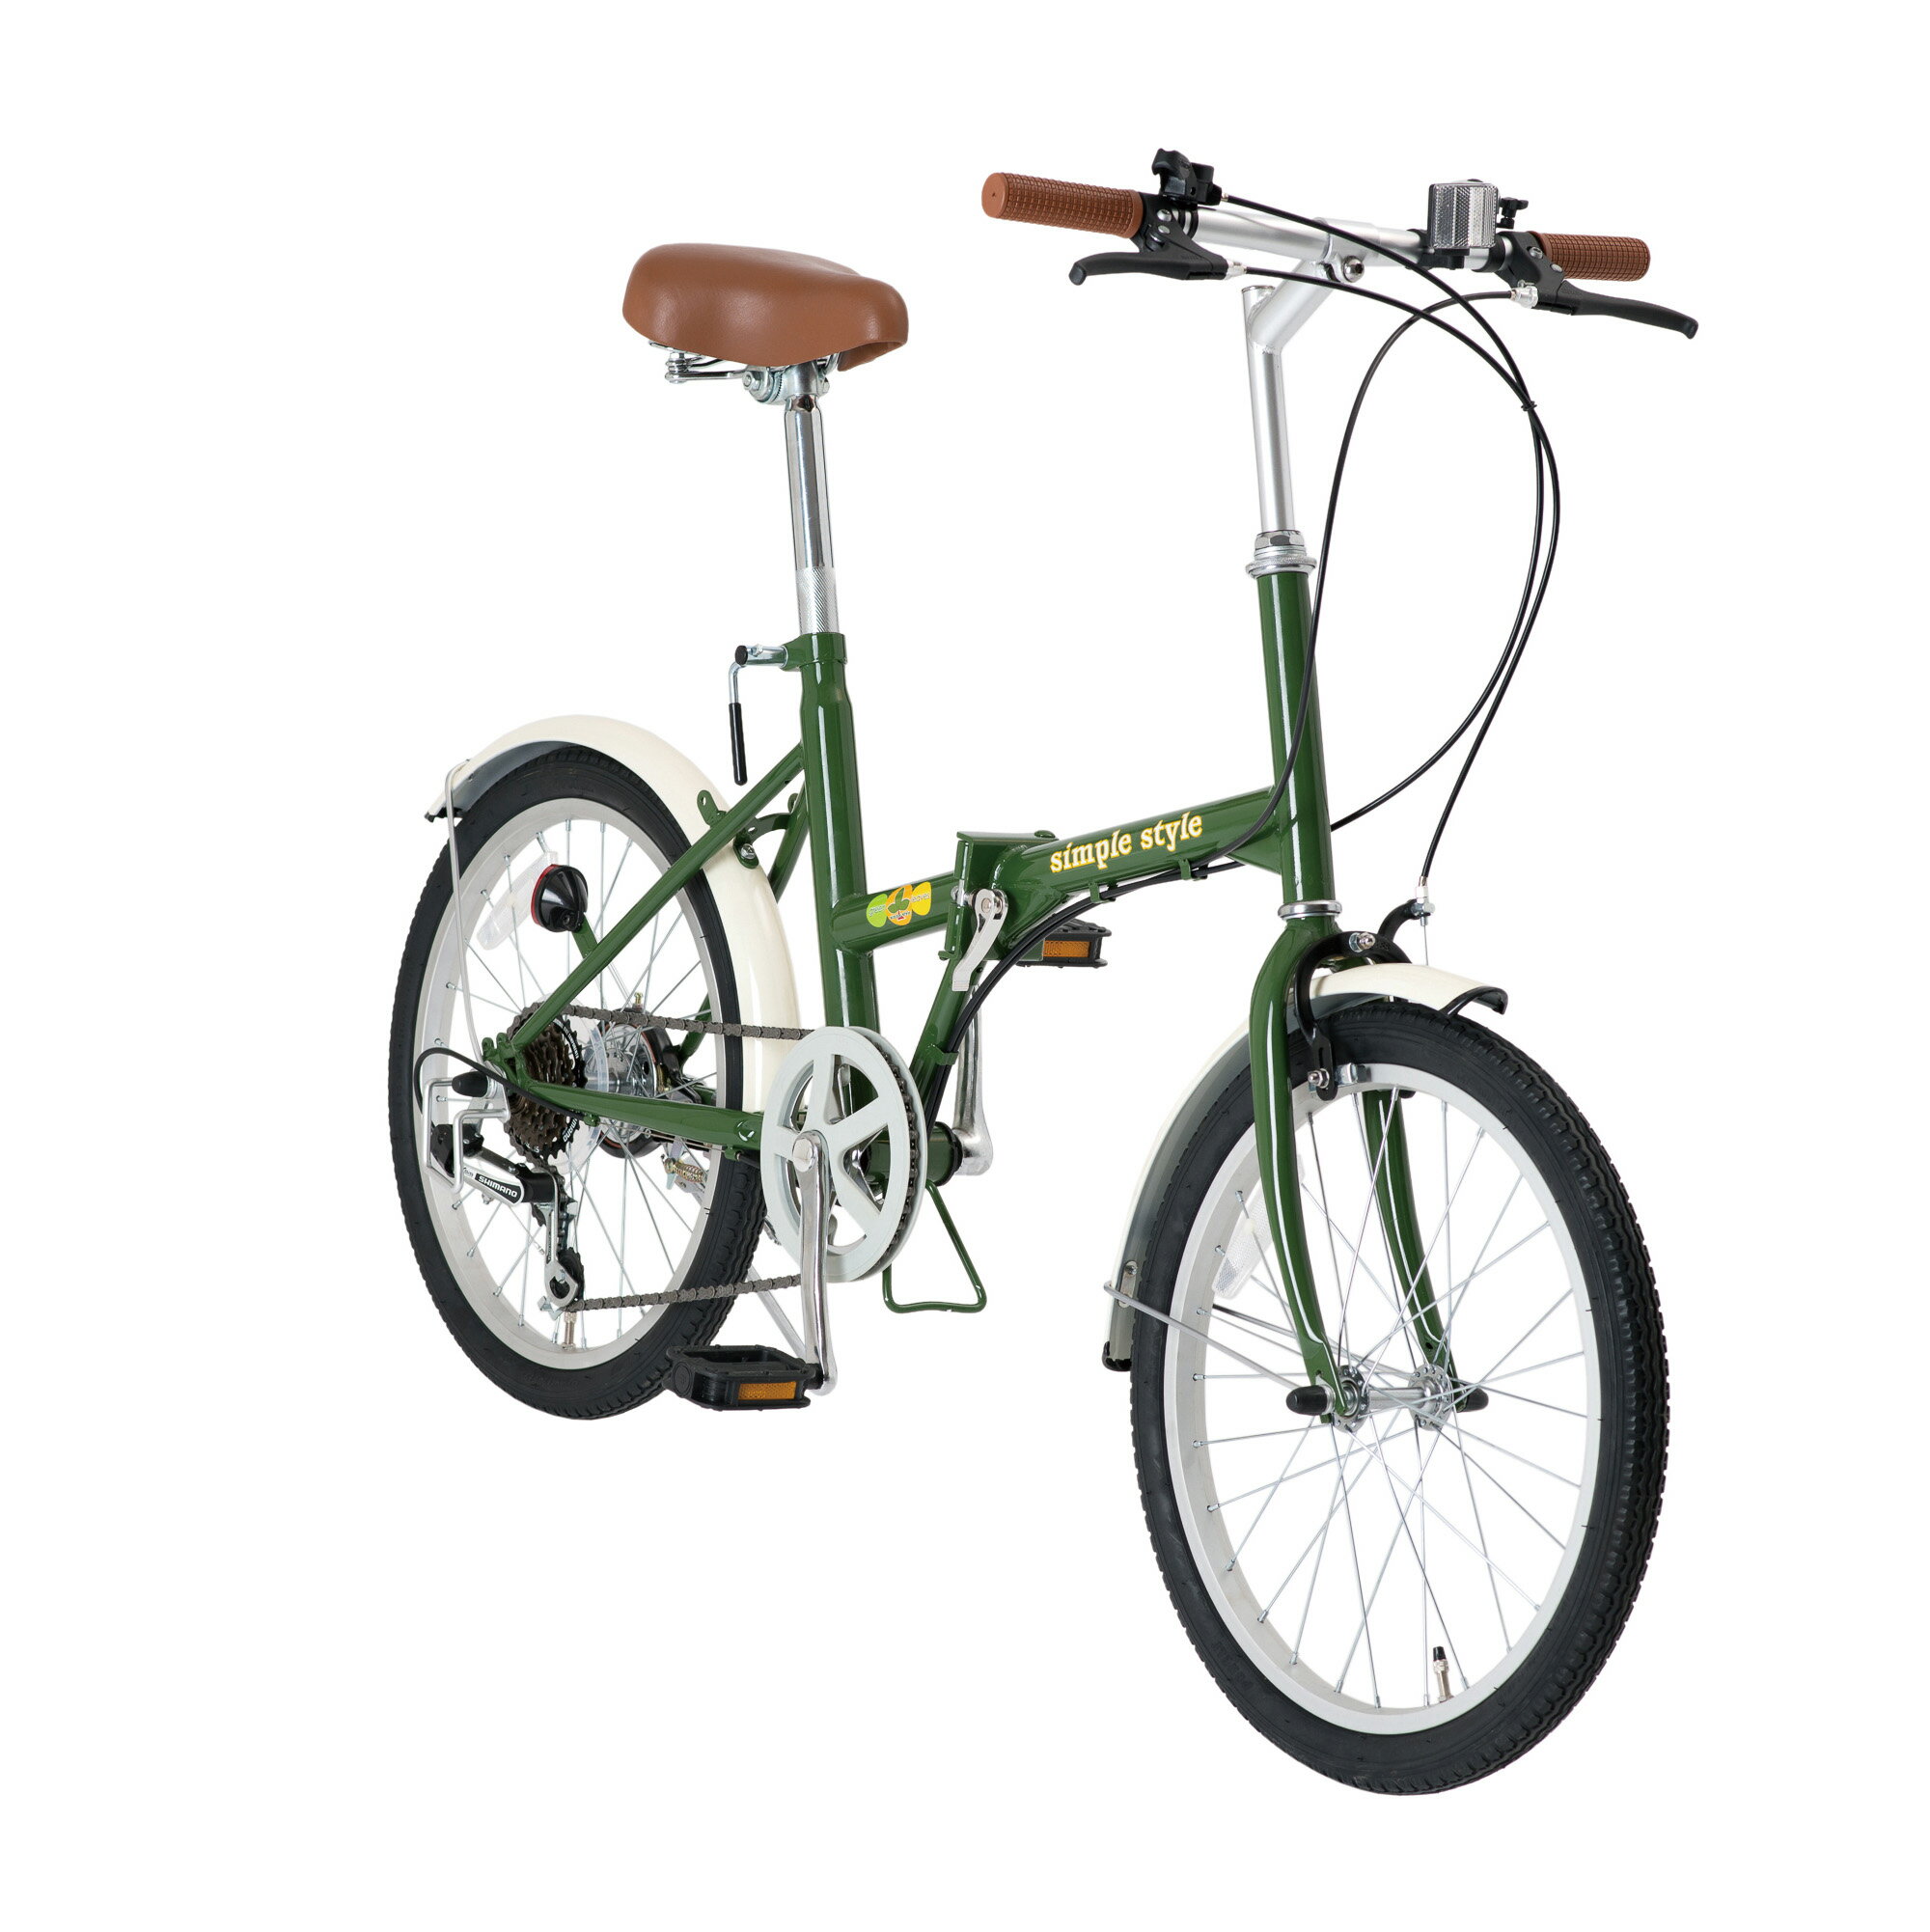 Simplestyle シンプルスタイル 20インチ 6段変速 折り畳み自転車 H206 (GL-H206) 通勤 通学 サイクリング